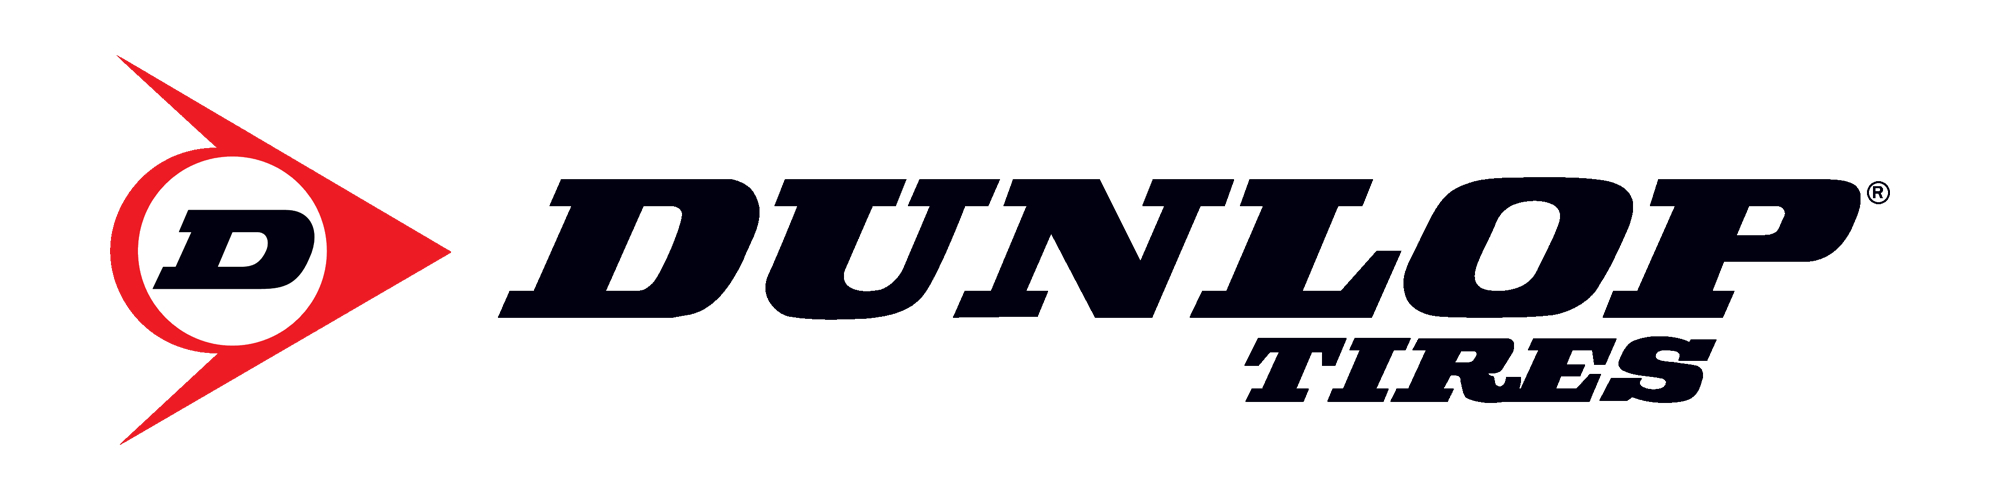 dunlop-logo-2